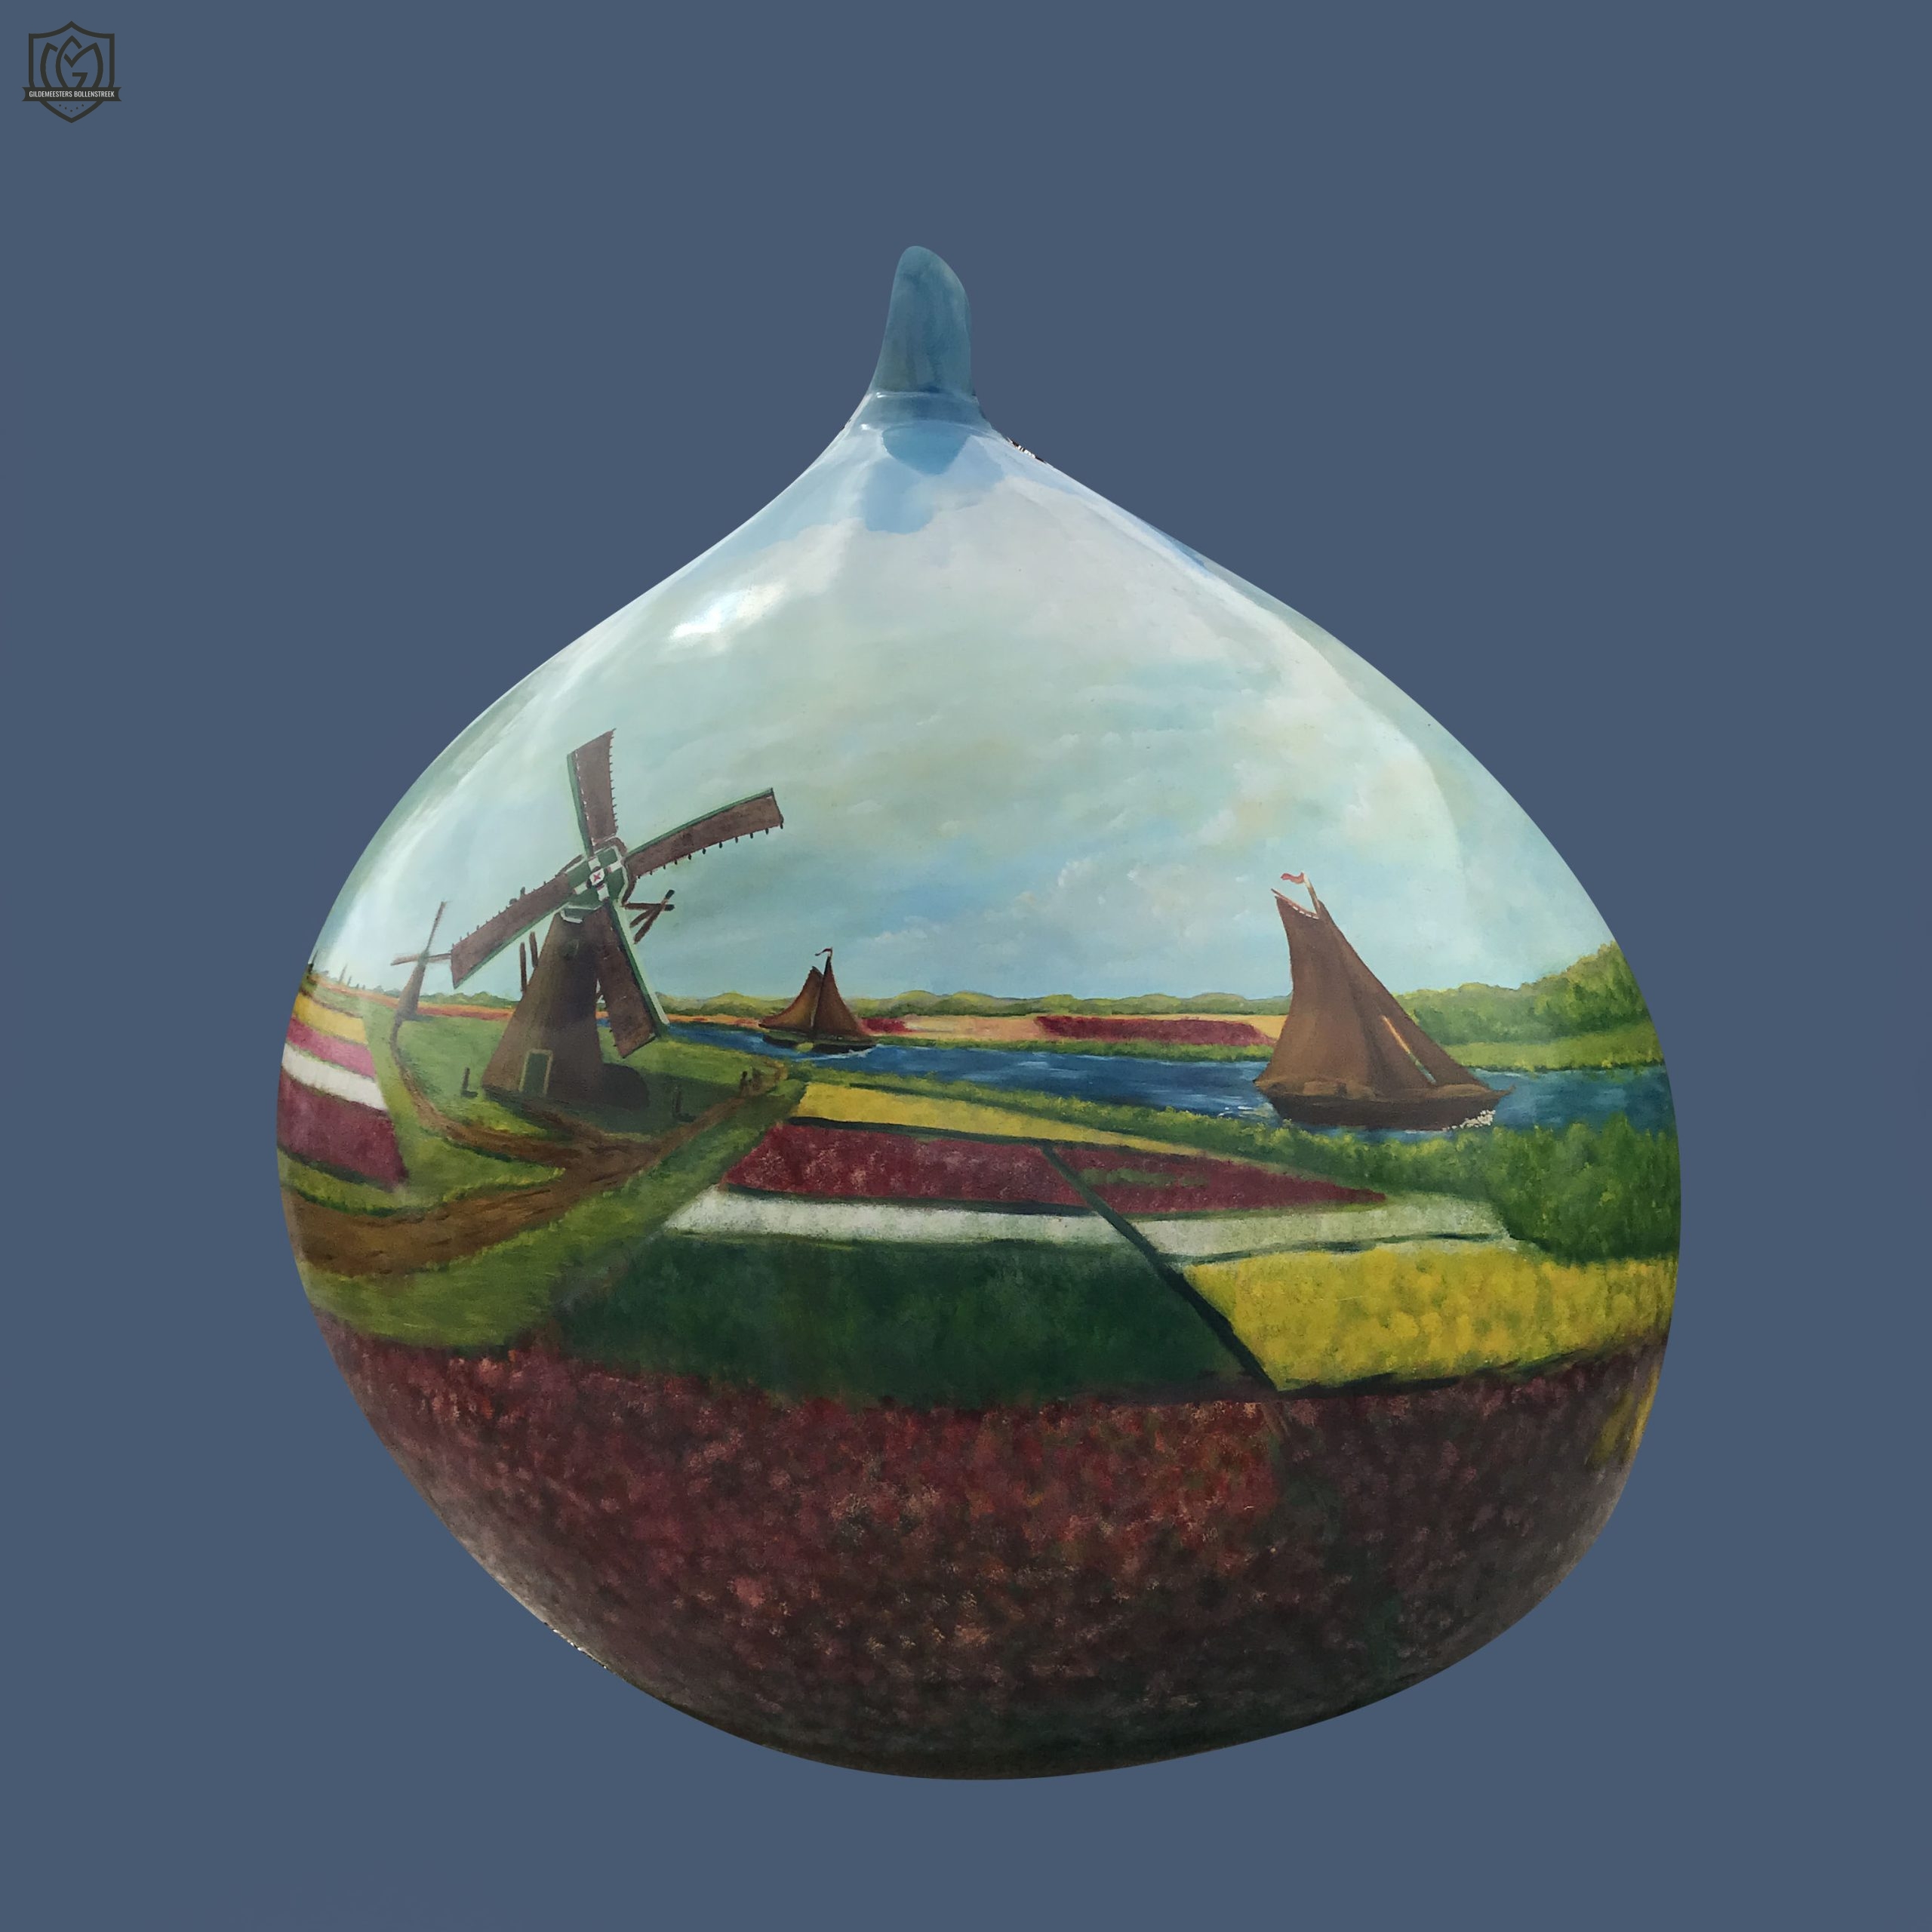 Reuzenbol 'Monet' - Jan Hogervorst